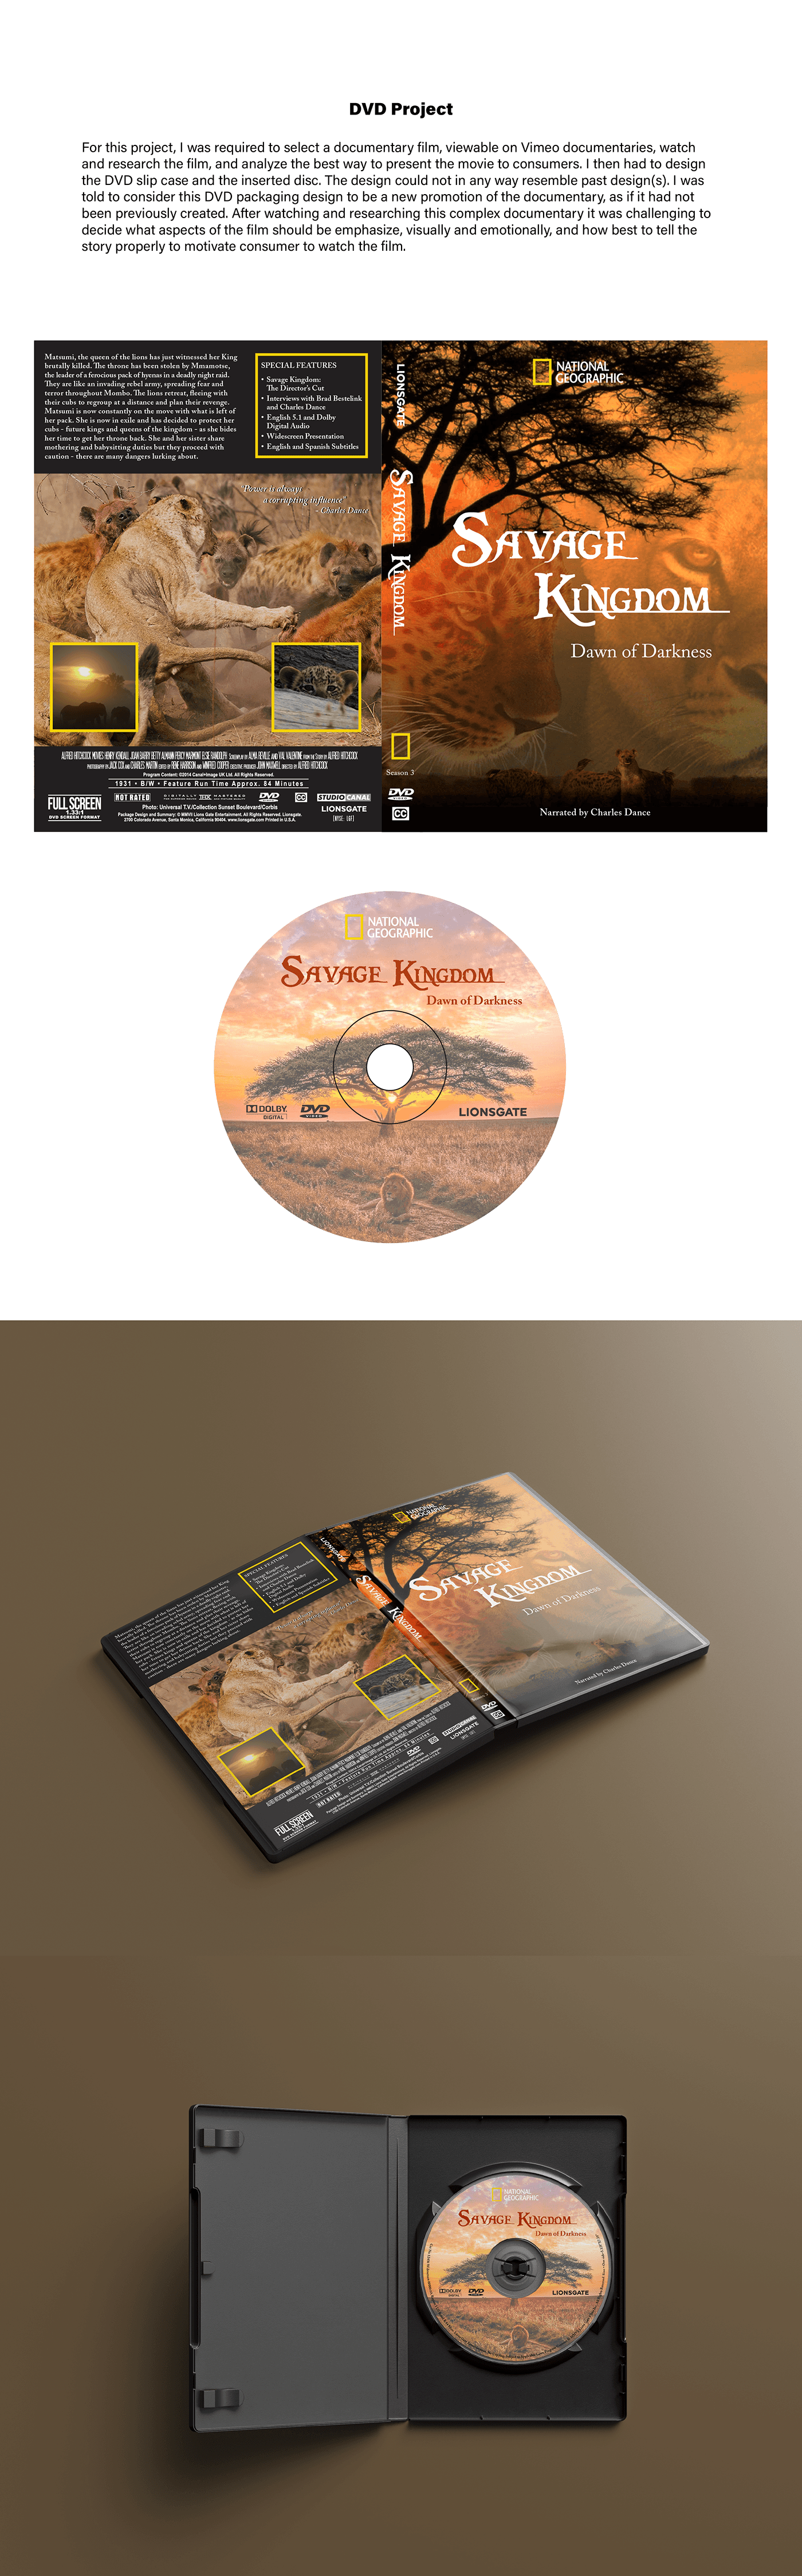 dvd cover dvd packaging film design Digital Art  adobe illustrator Film artwork